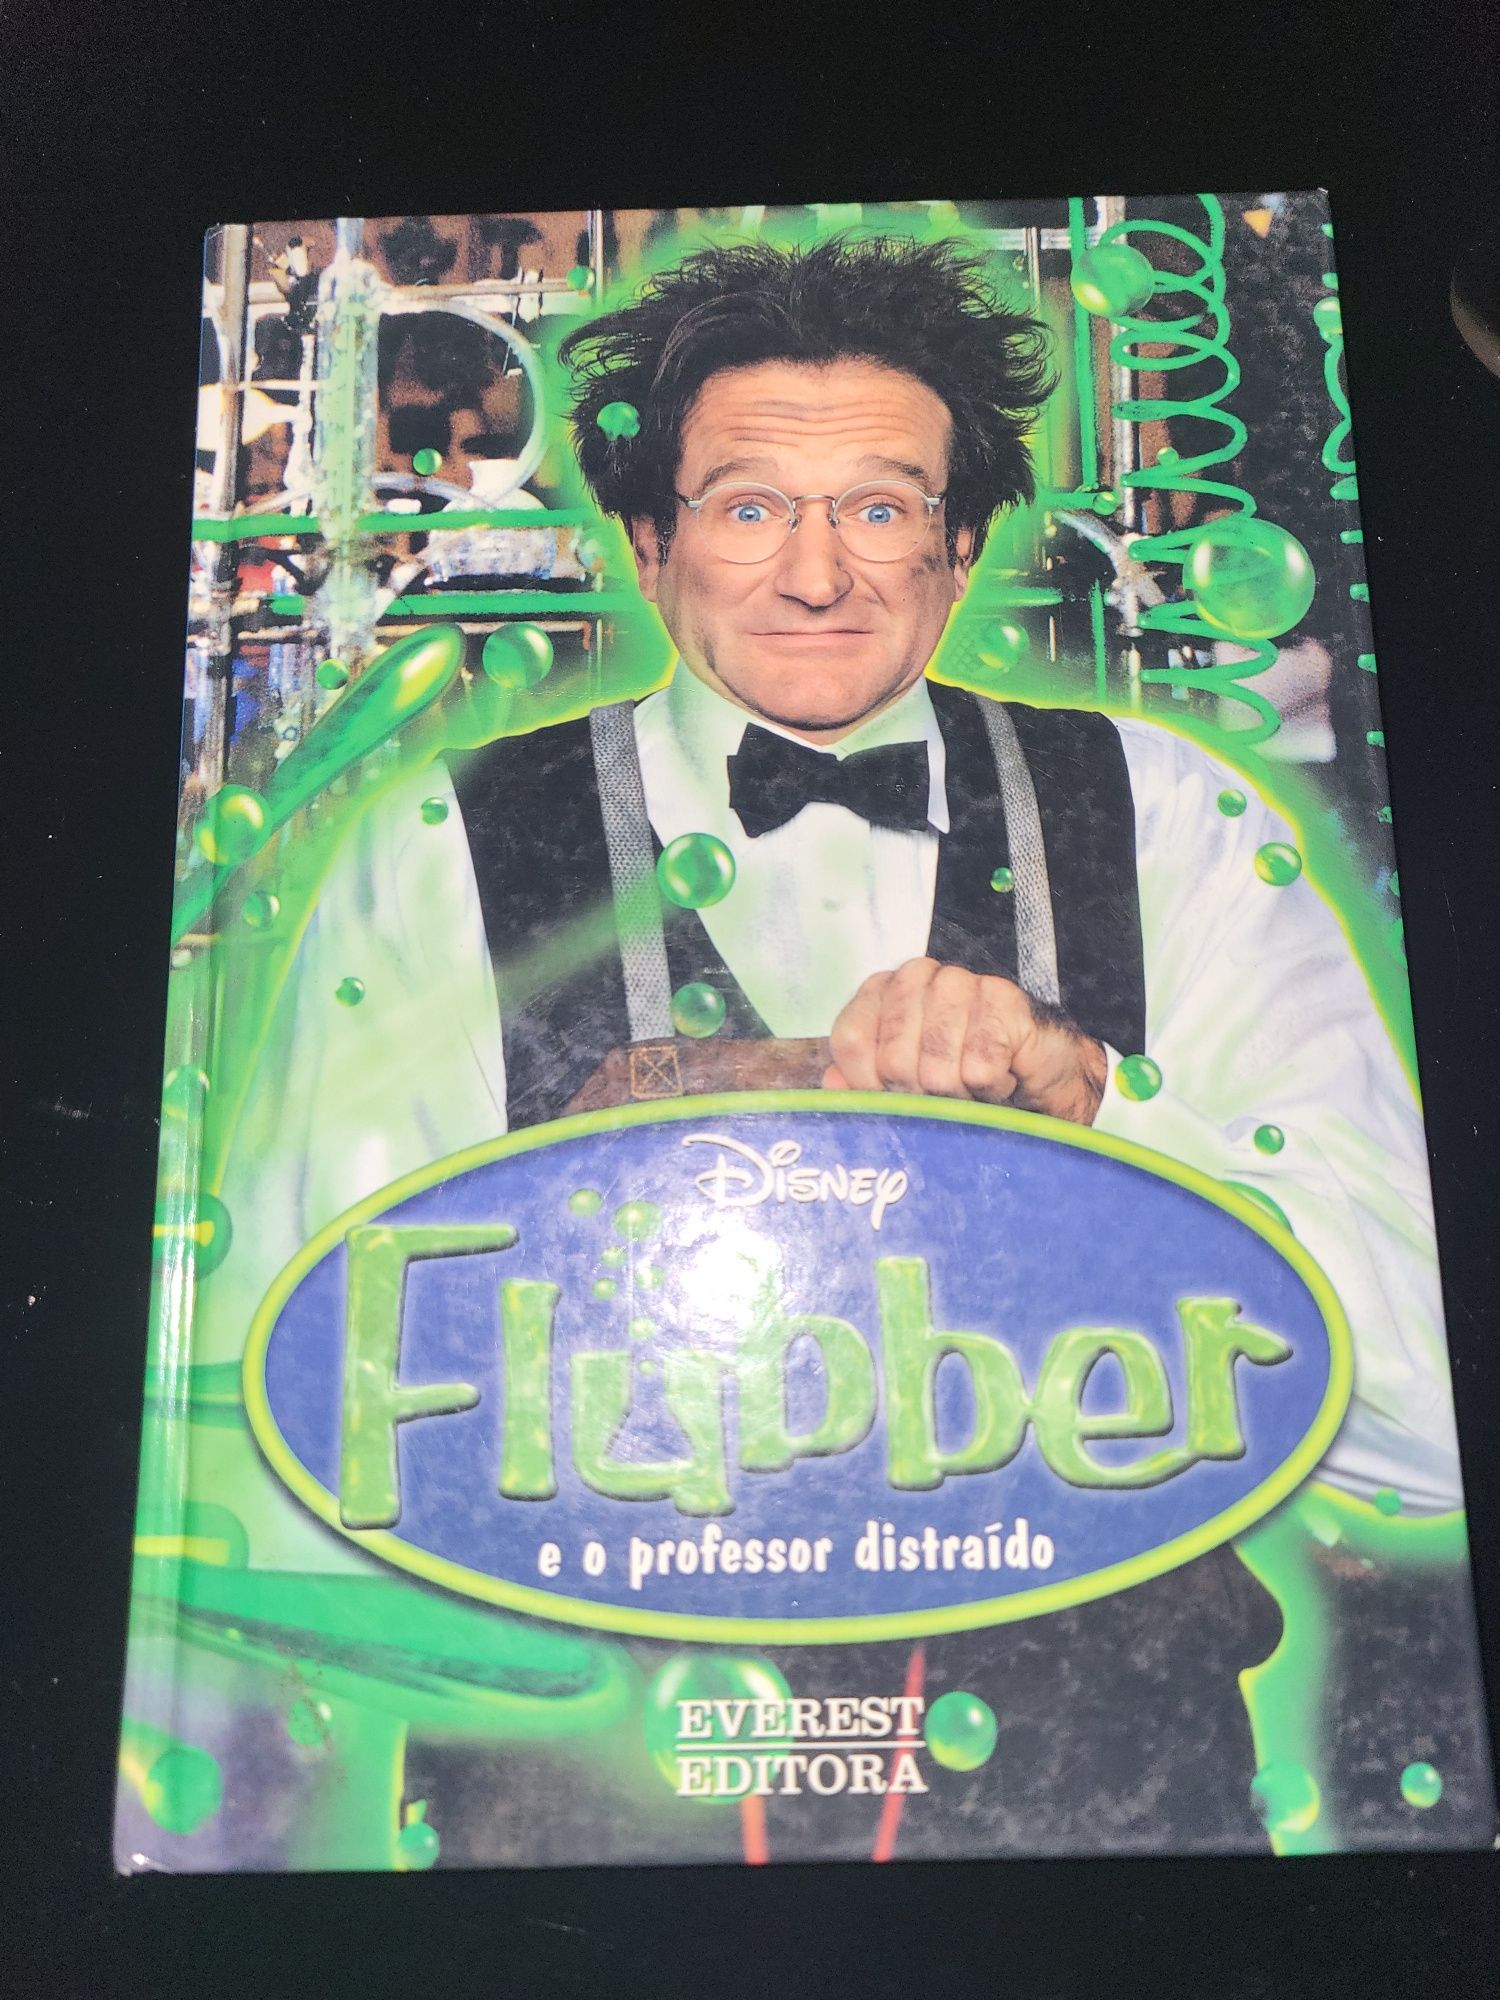 Livro "Flubber e o professor distraído"